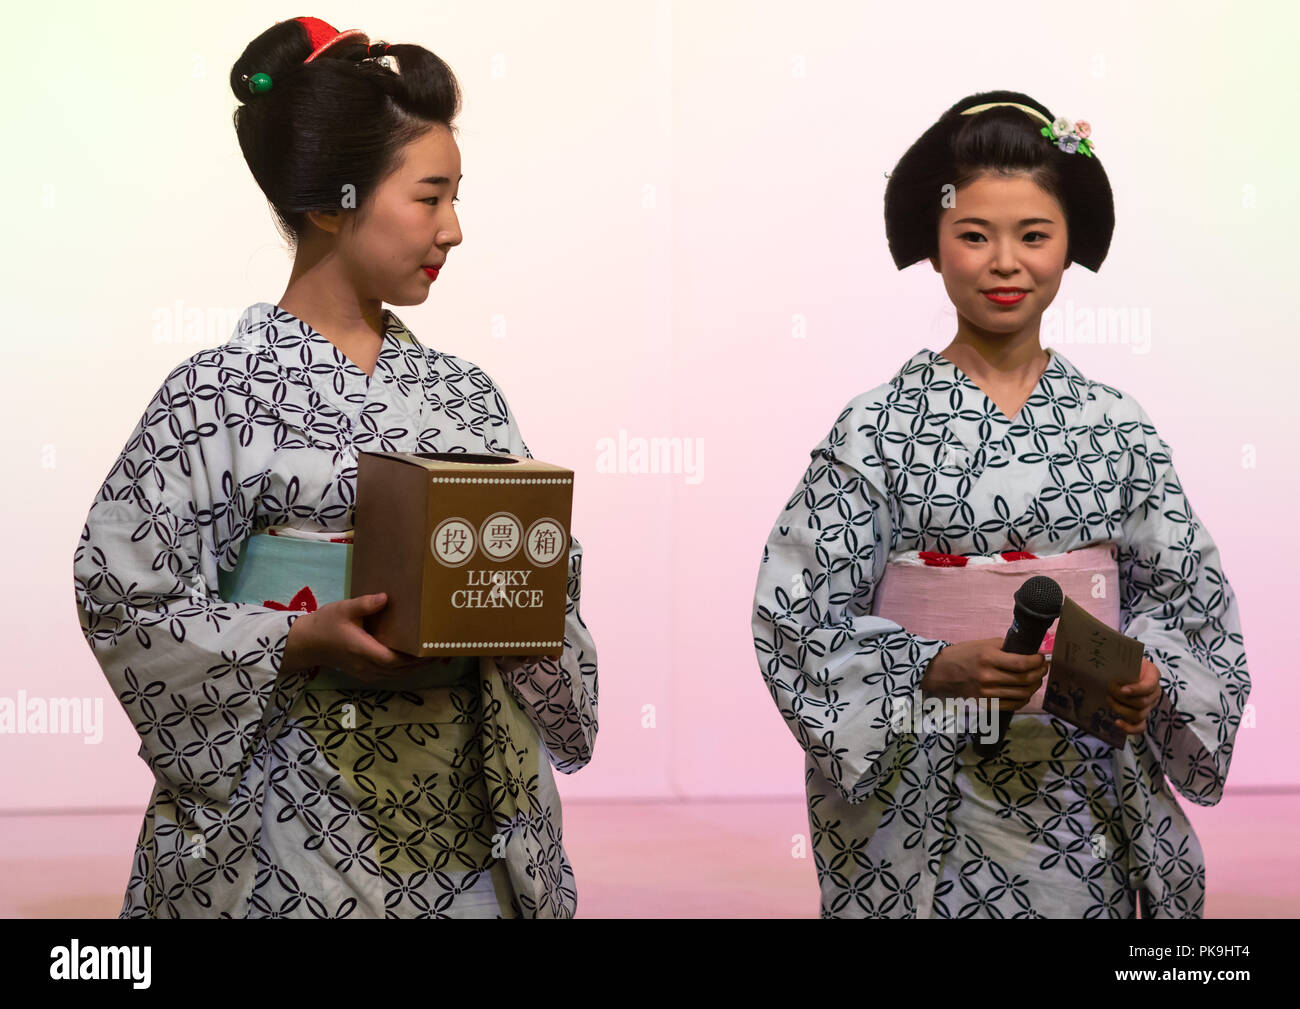 Maiko women making a game on stage, Kansai region, Kyoto, Japan Stock Photo